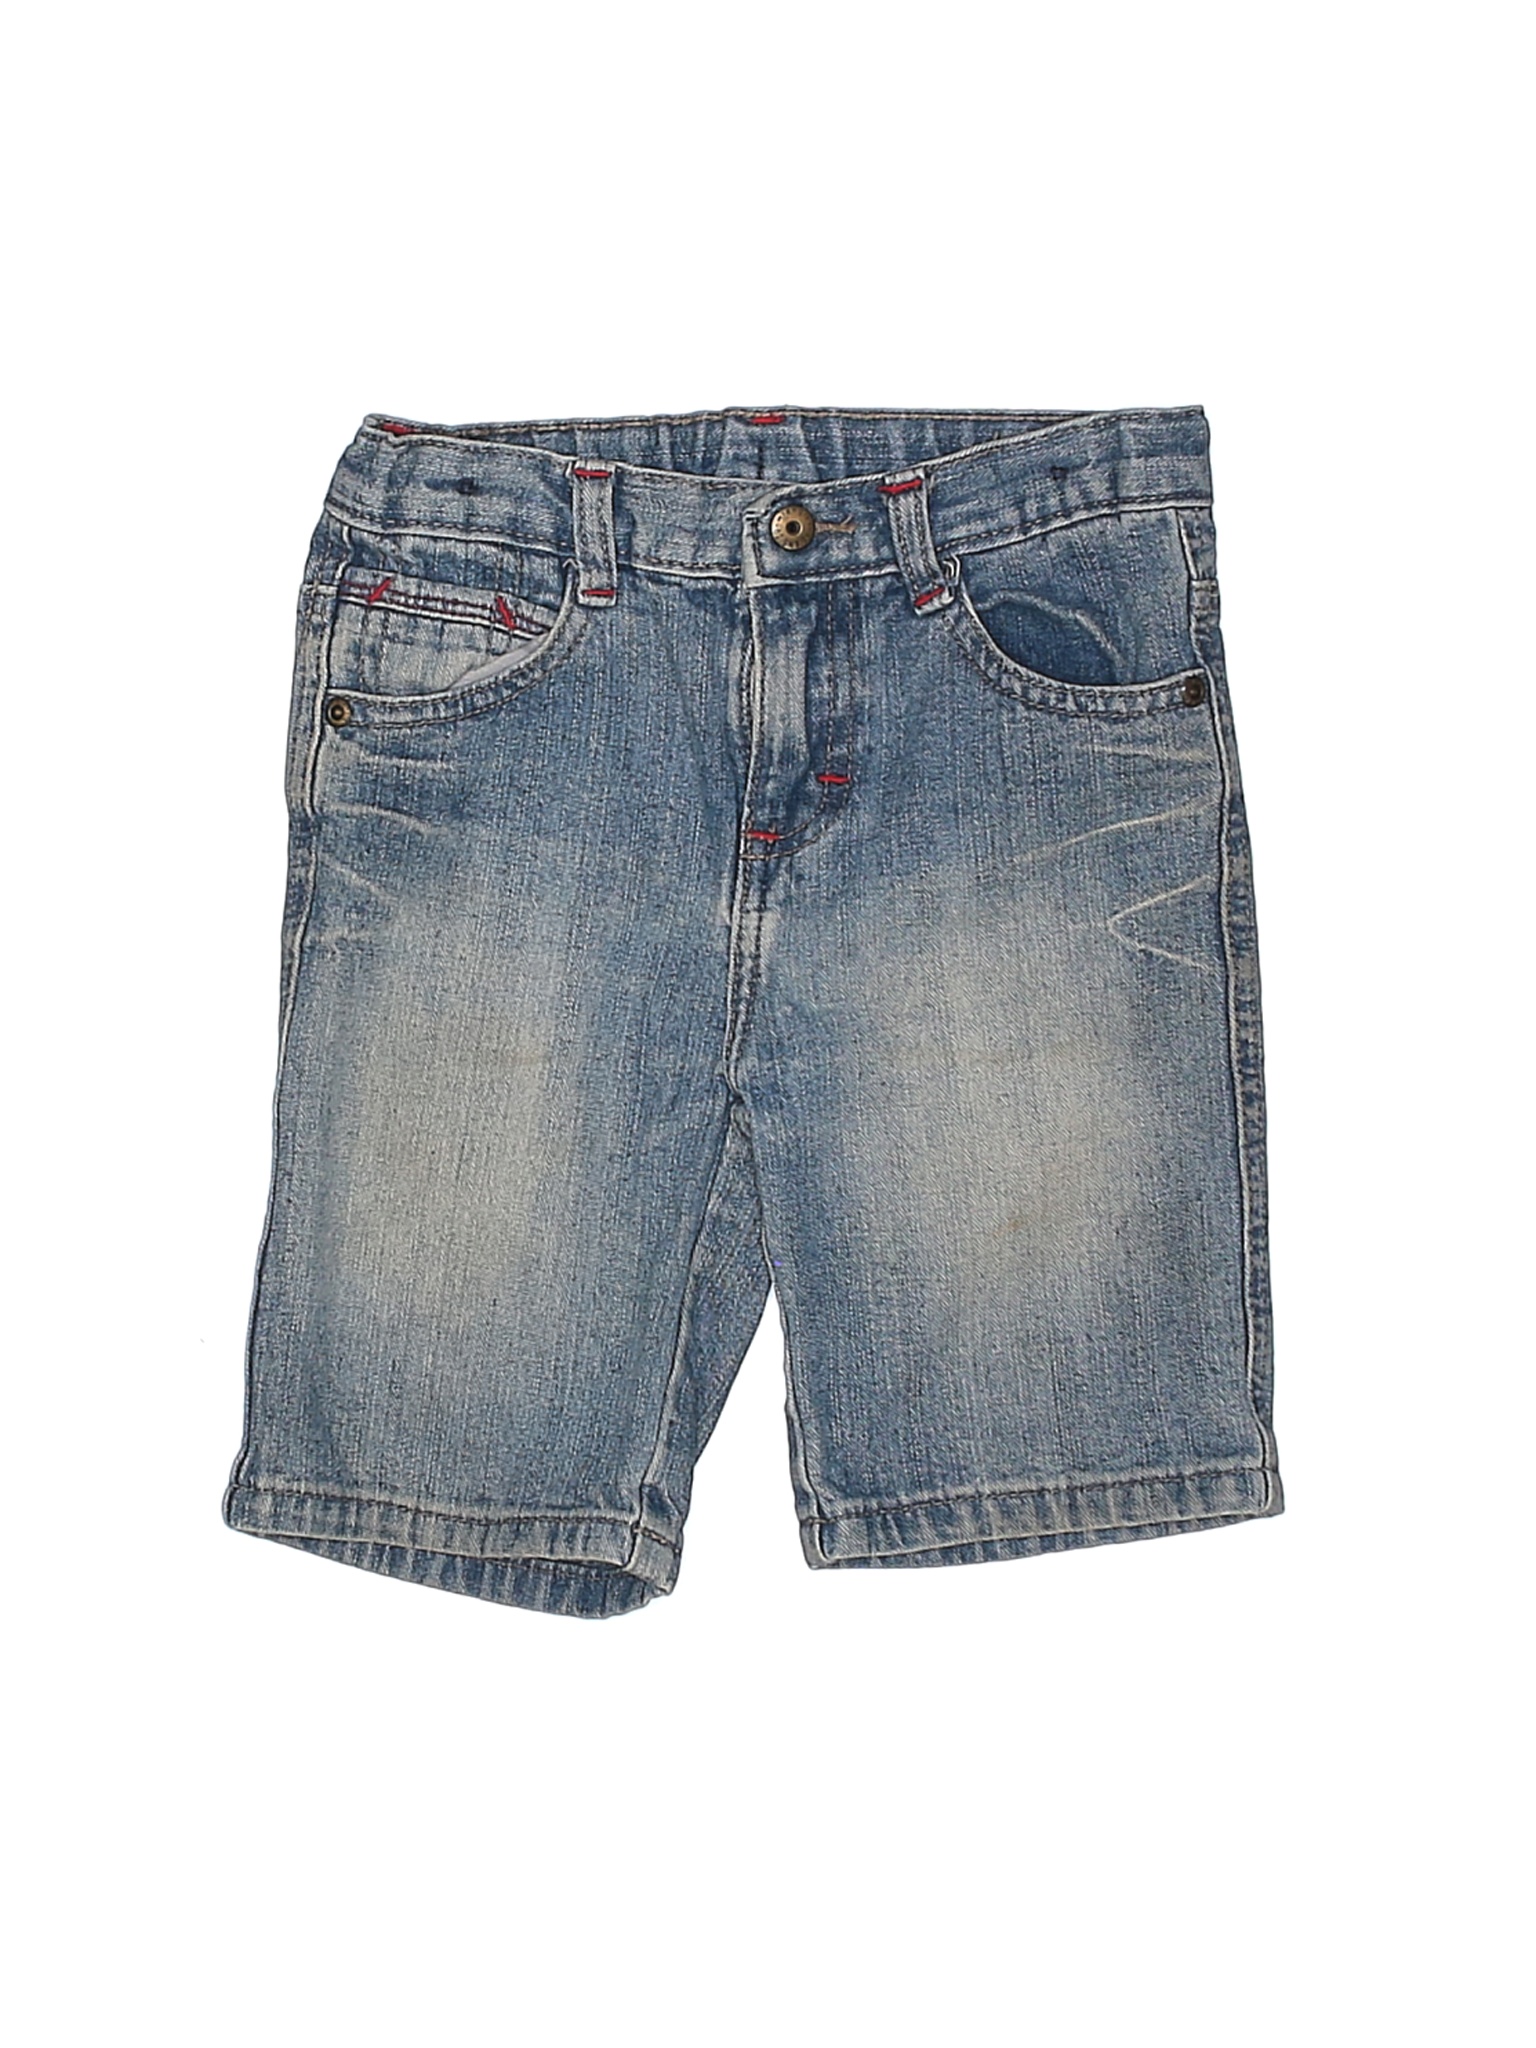 Wrangler Jeans Co Boys Blue Denim Shorts 5T | eBay